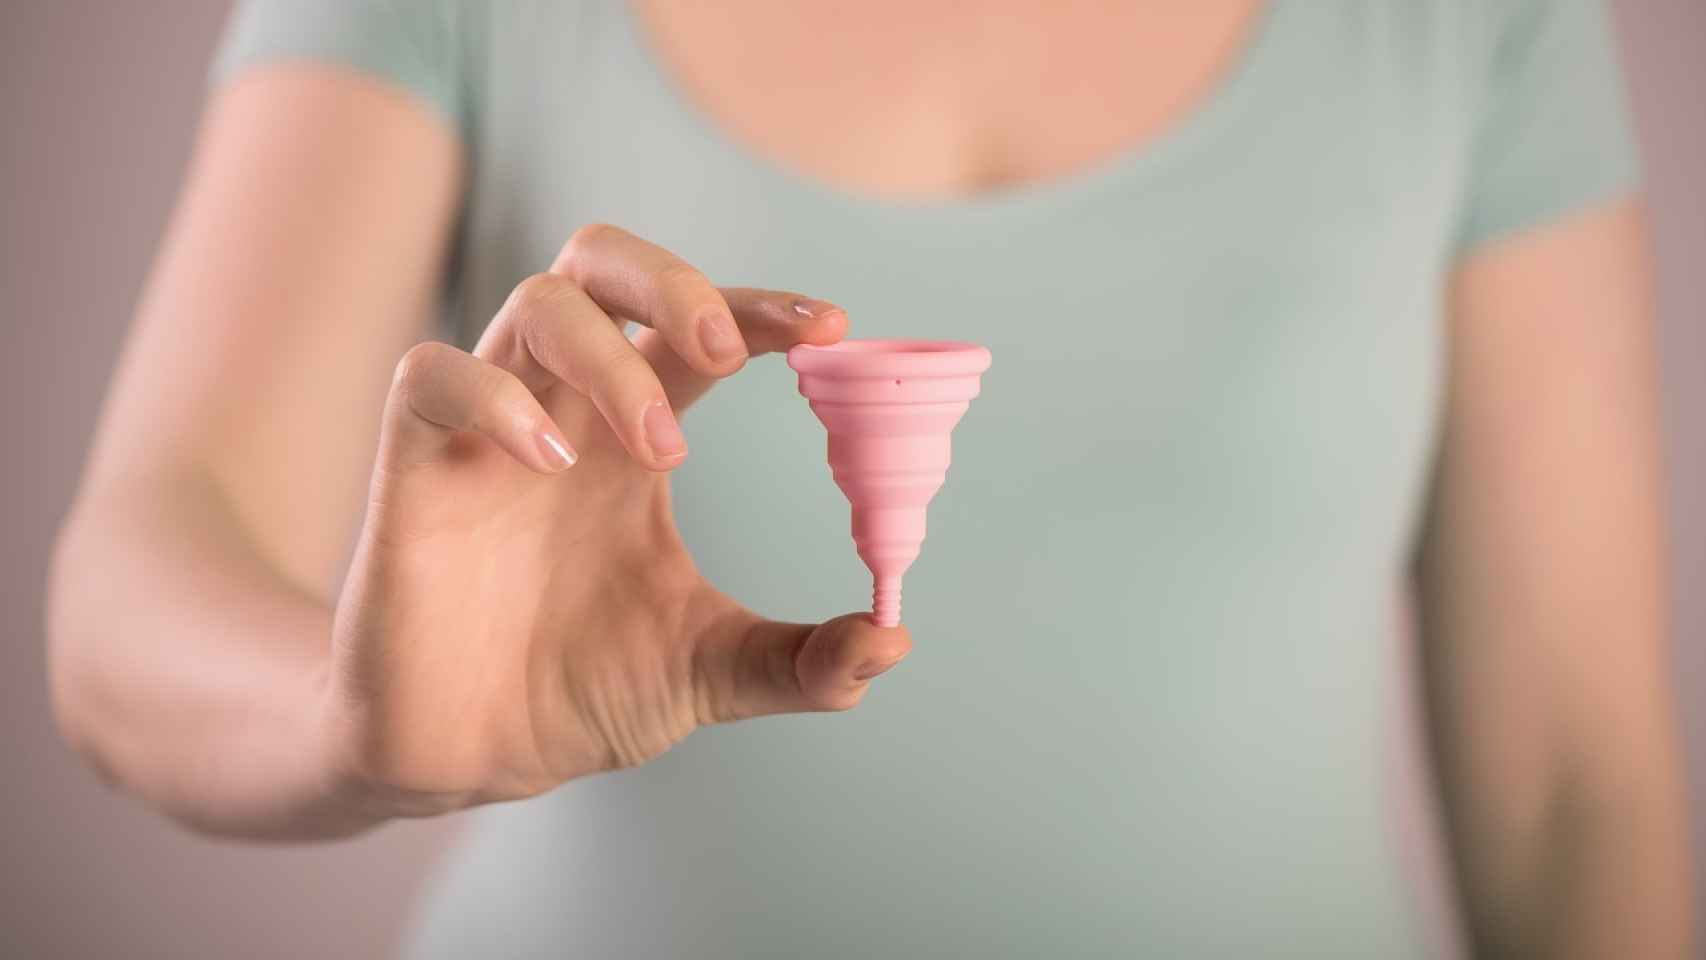 Copa menstrual: cómo usarla, beneficios y opiniones En Suelo Firme